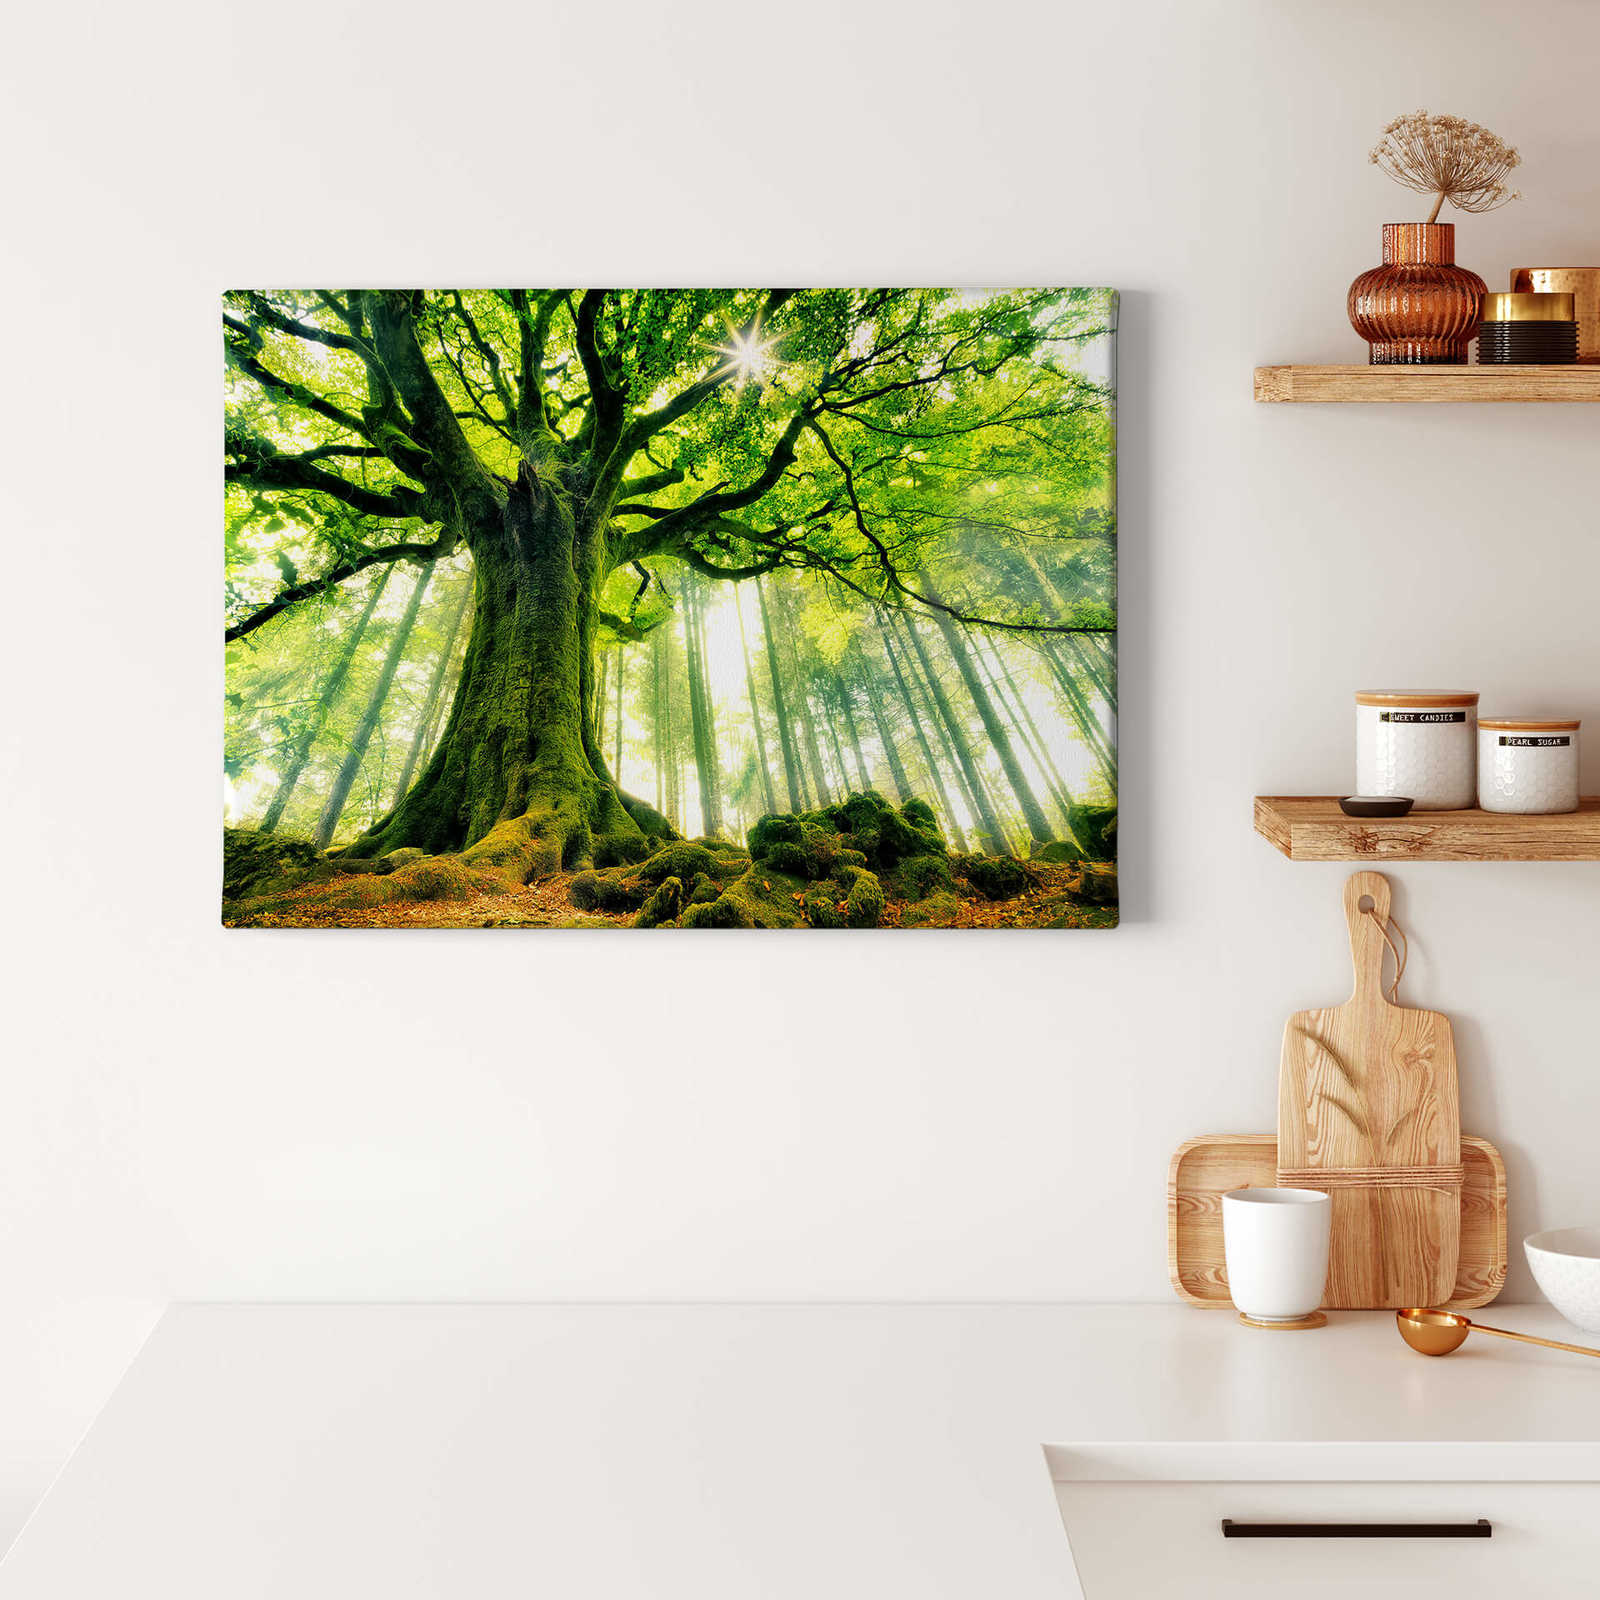             Kiciak Leinwandbild Blätterwald mit Märchenstimmung – 0,70 m x 0,50 m
        